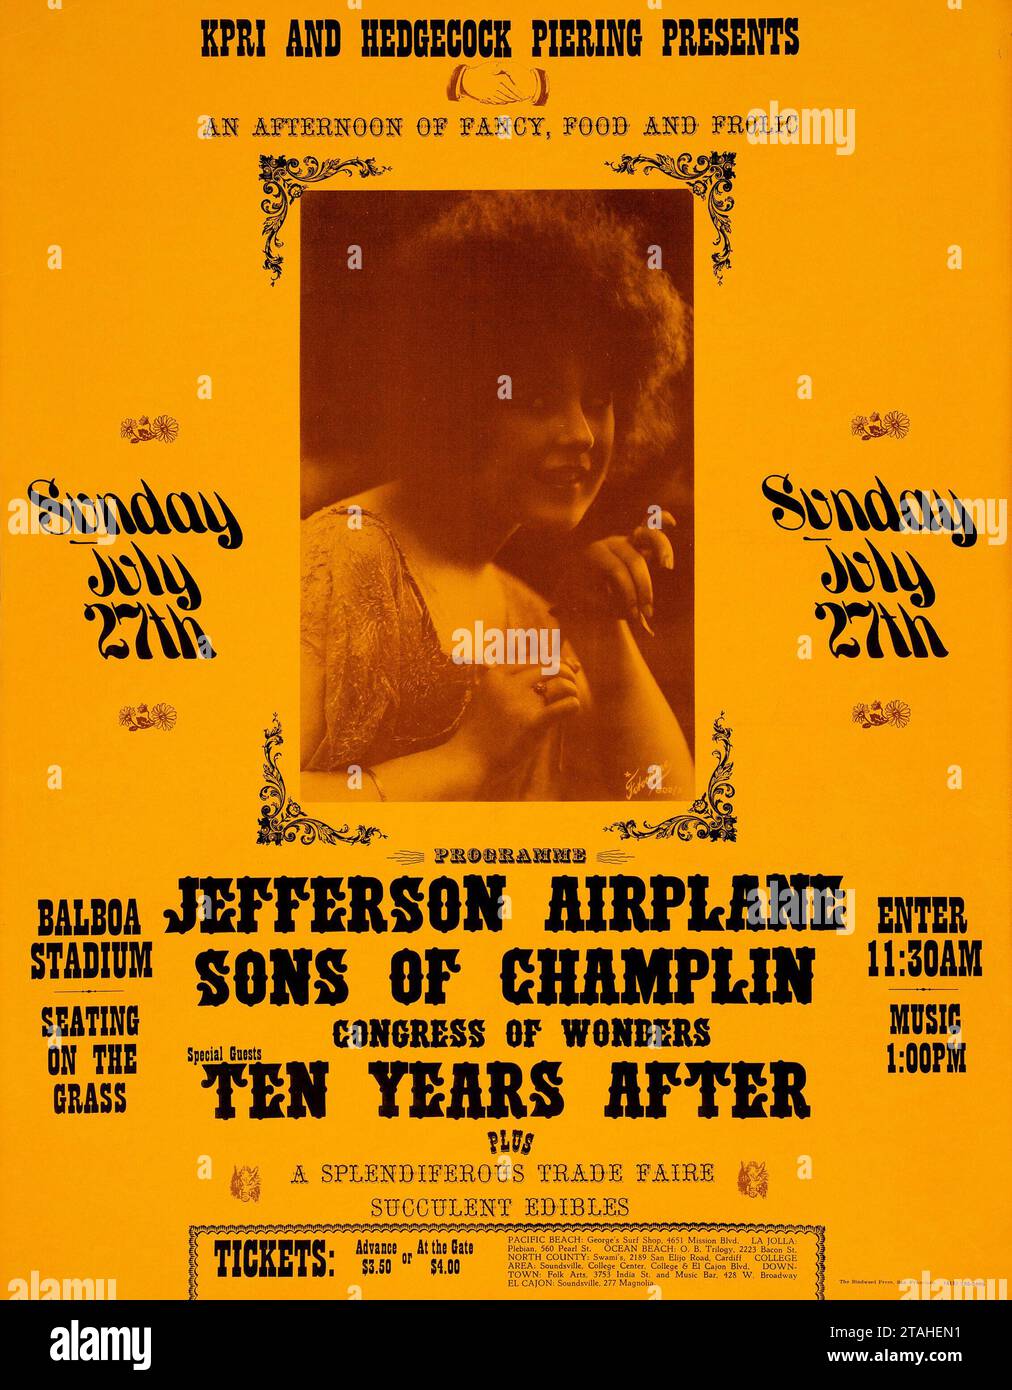 Jefferson Airplane, Sons of Champlin, zehn Jahre nach 1969 - Balboa Stadium, San Diego, Vintage California, Nachmittagskonzert Poster Stockfoto